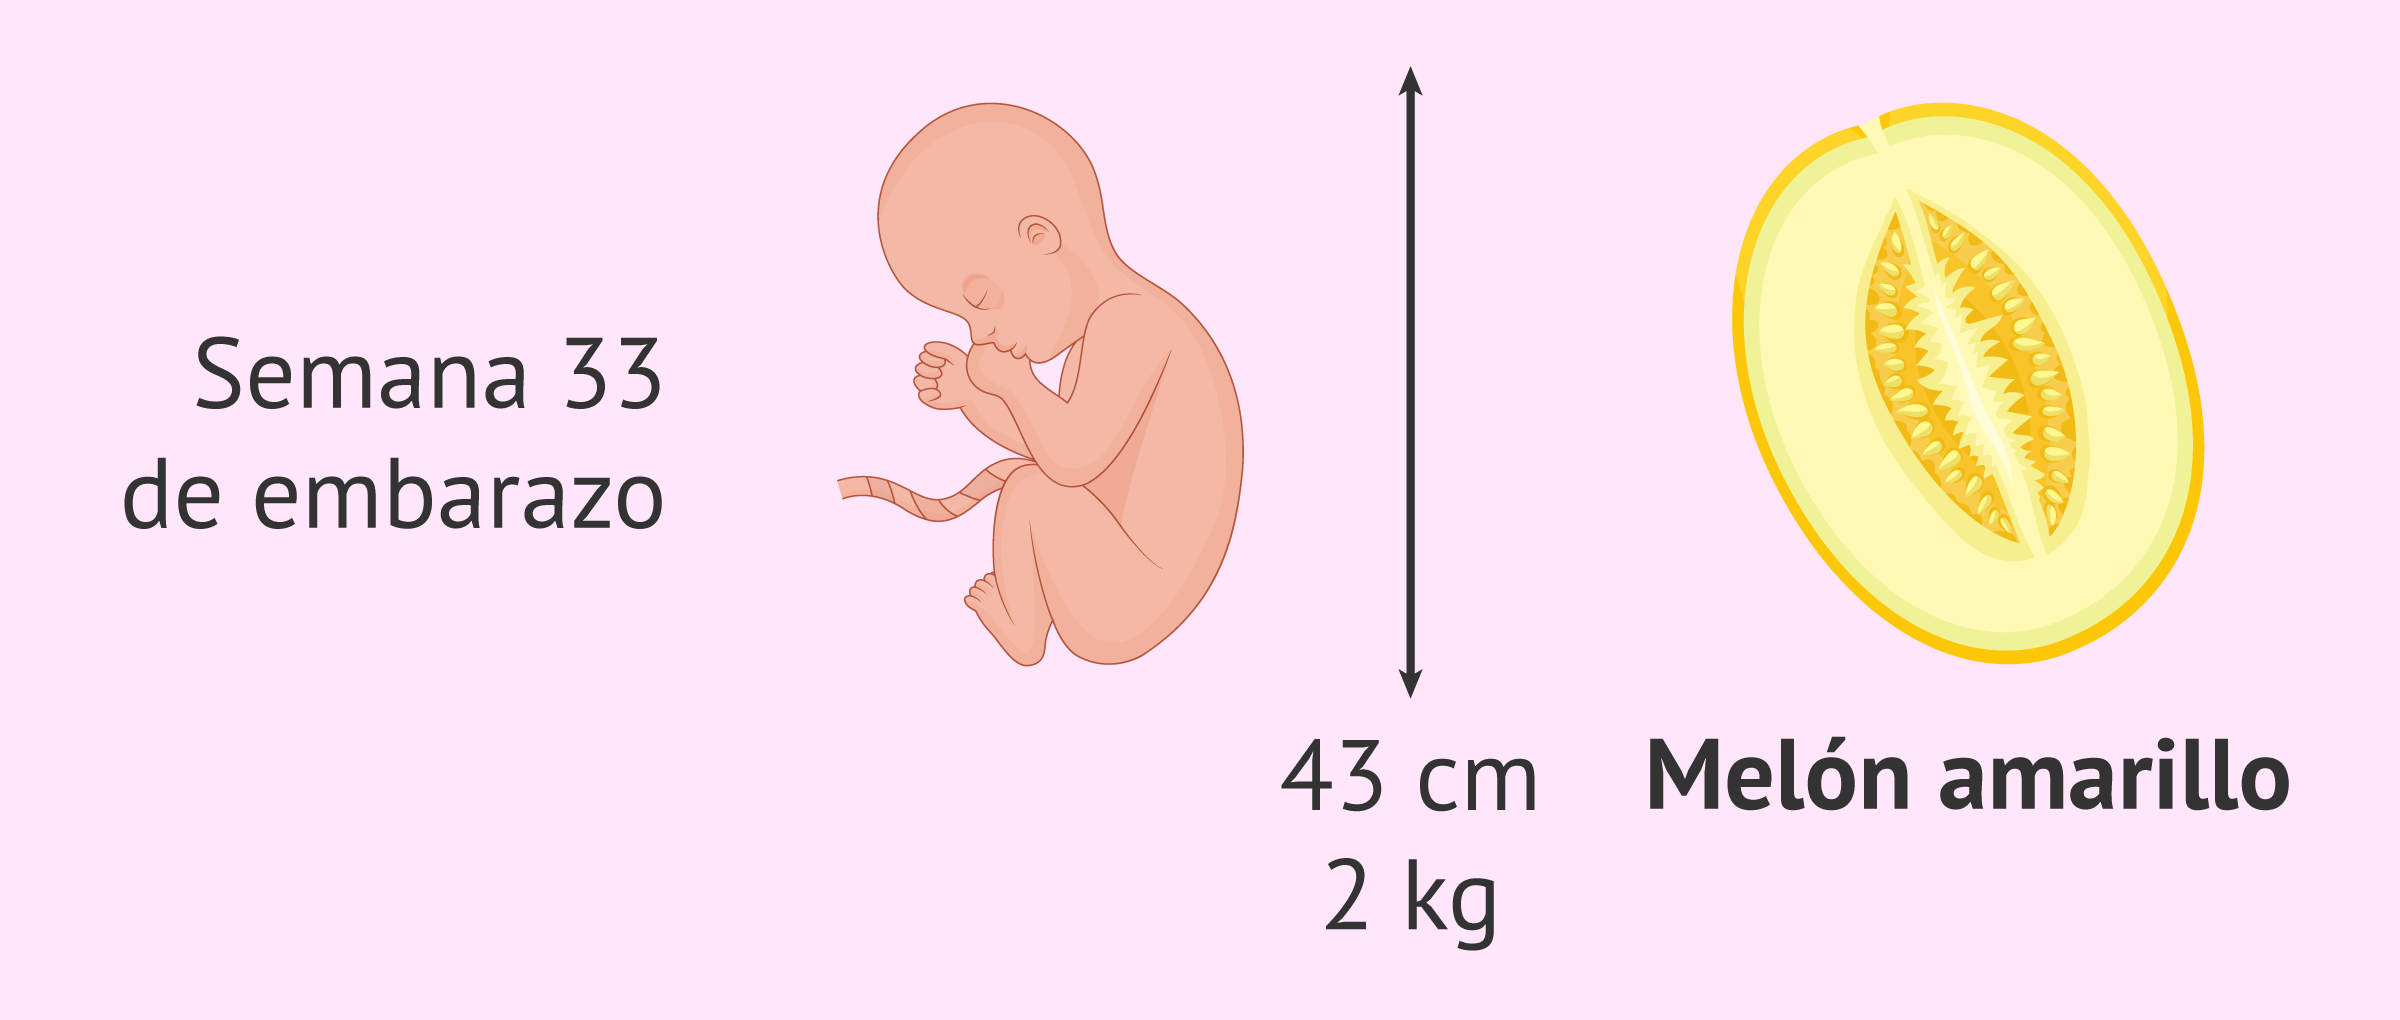 Cual Es La Mitad De Dos Mas Dos Cambios en el bebé y molestias habituales en la semana 33 de embarazo